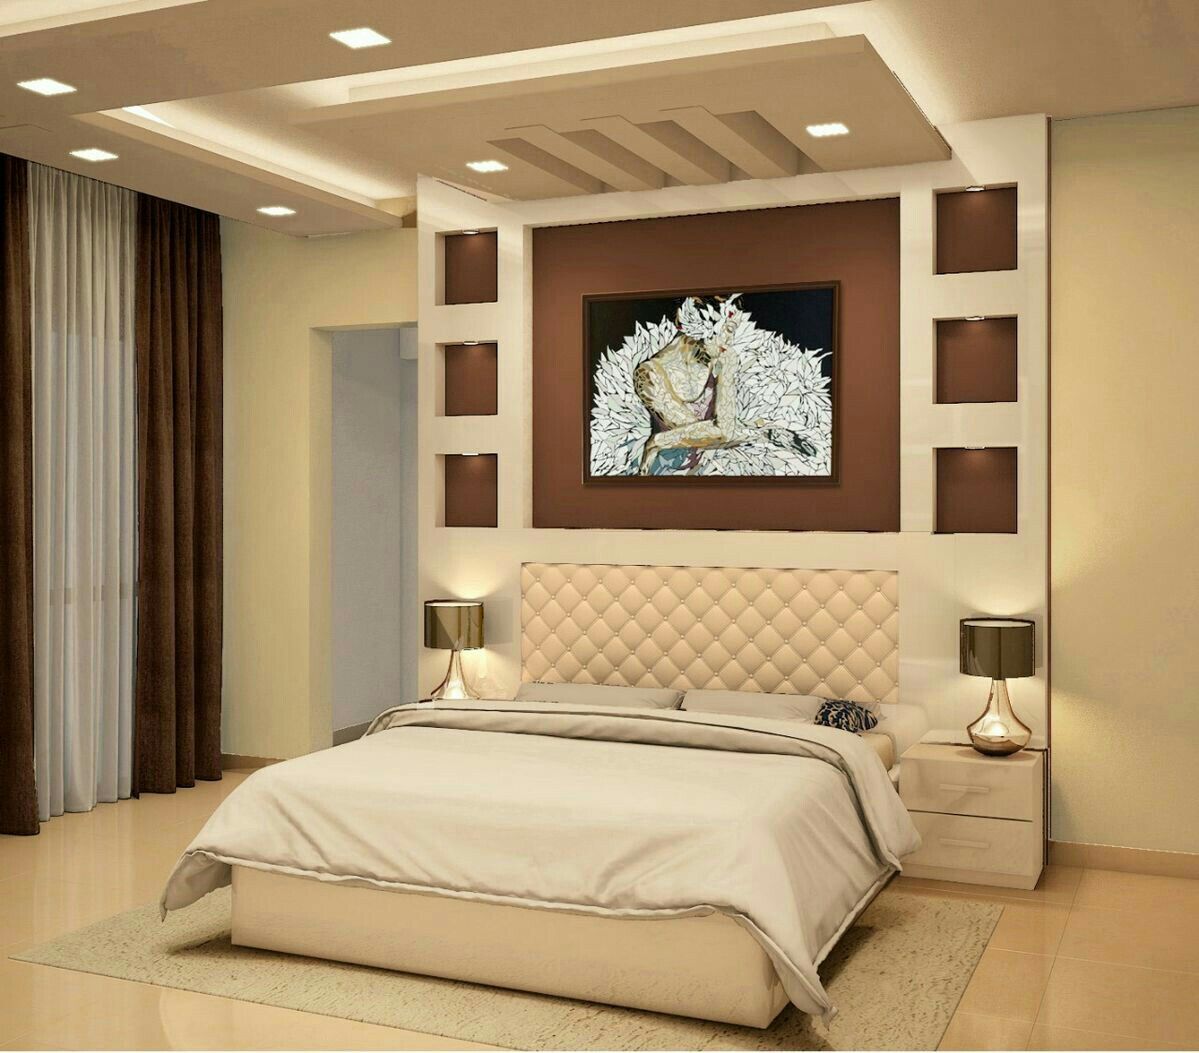 Textures Aloft: Enhancing Comfort With Textured Bedroom Ceiling Designs